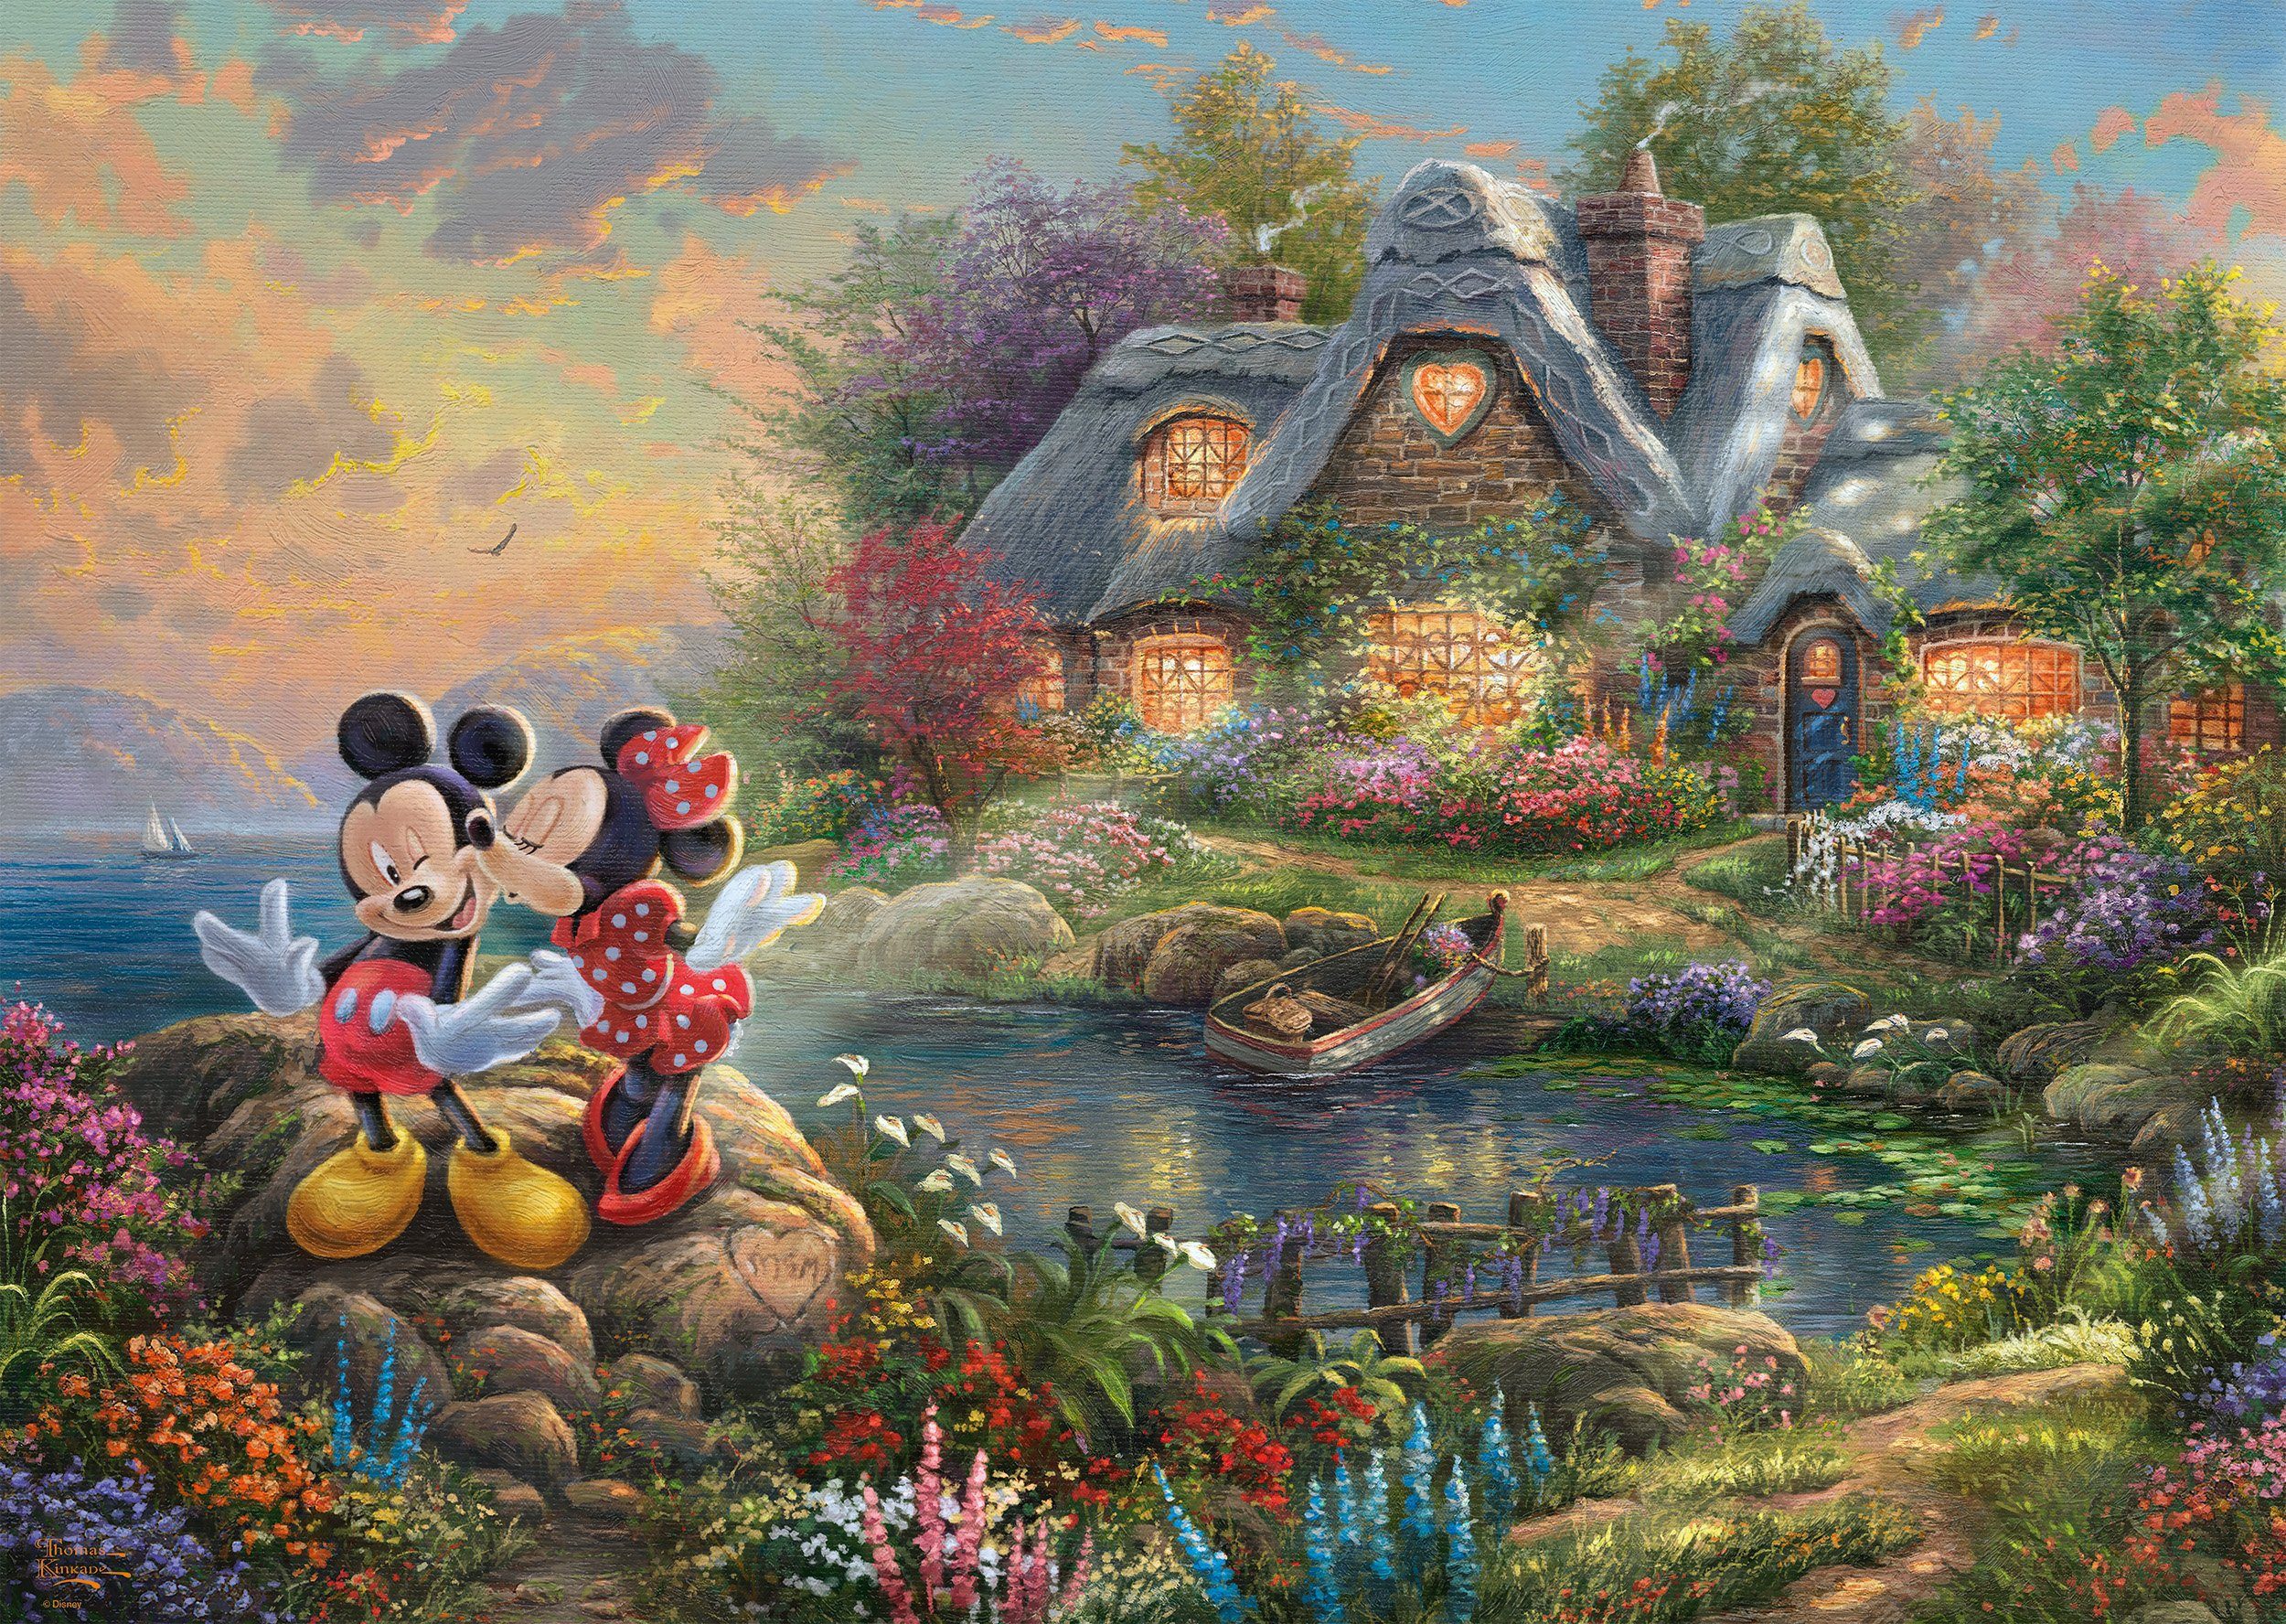 Schmidt Spiele Puzzle Thomas & Minnie, Kinkade 1000 Disney, Puzzleteile, Sweethearts Mickey